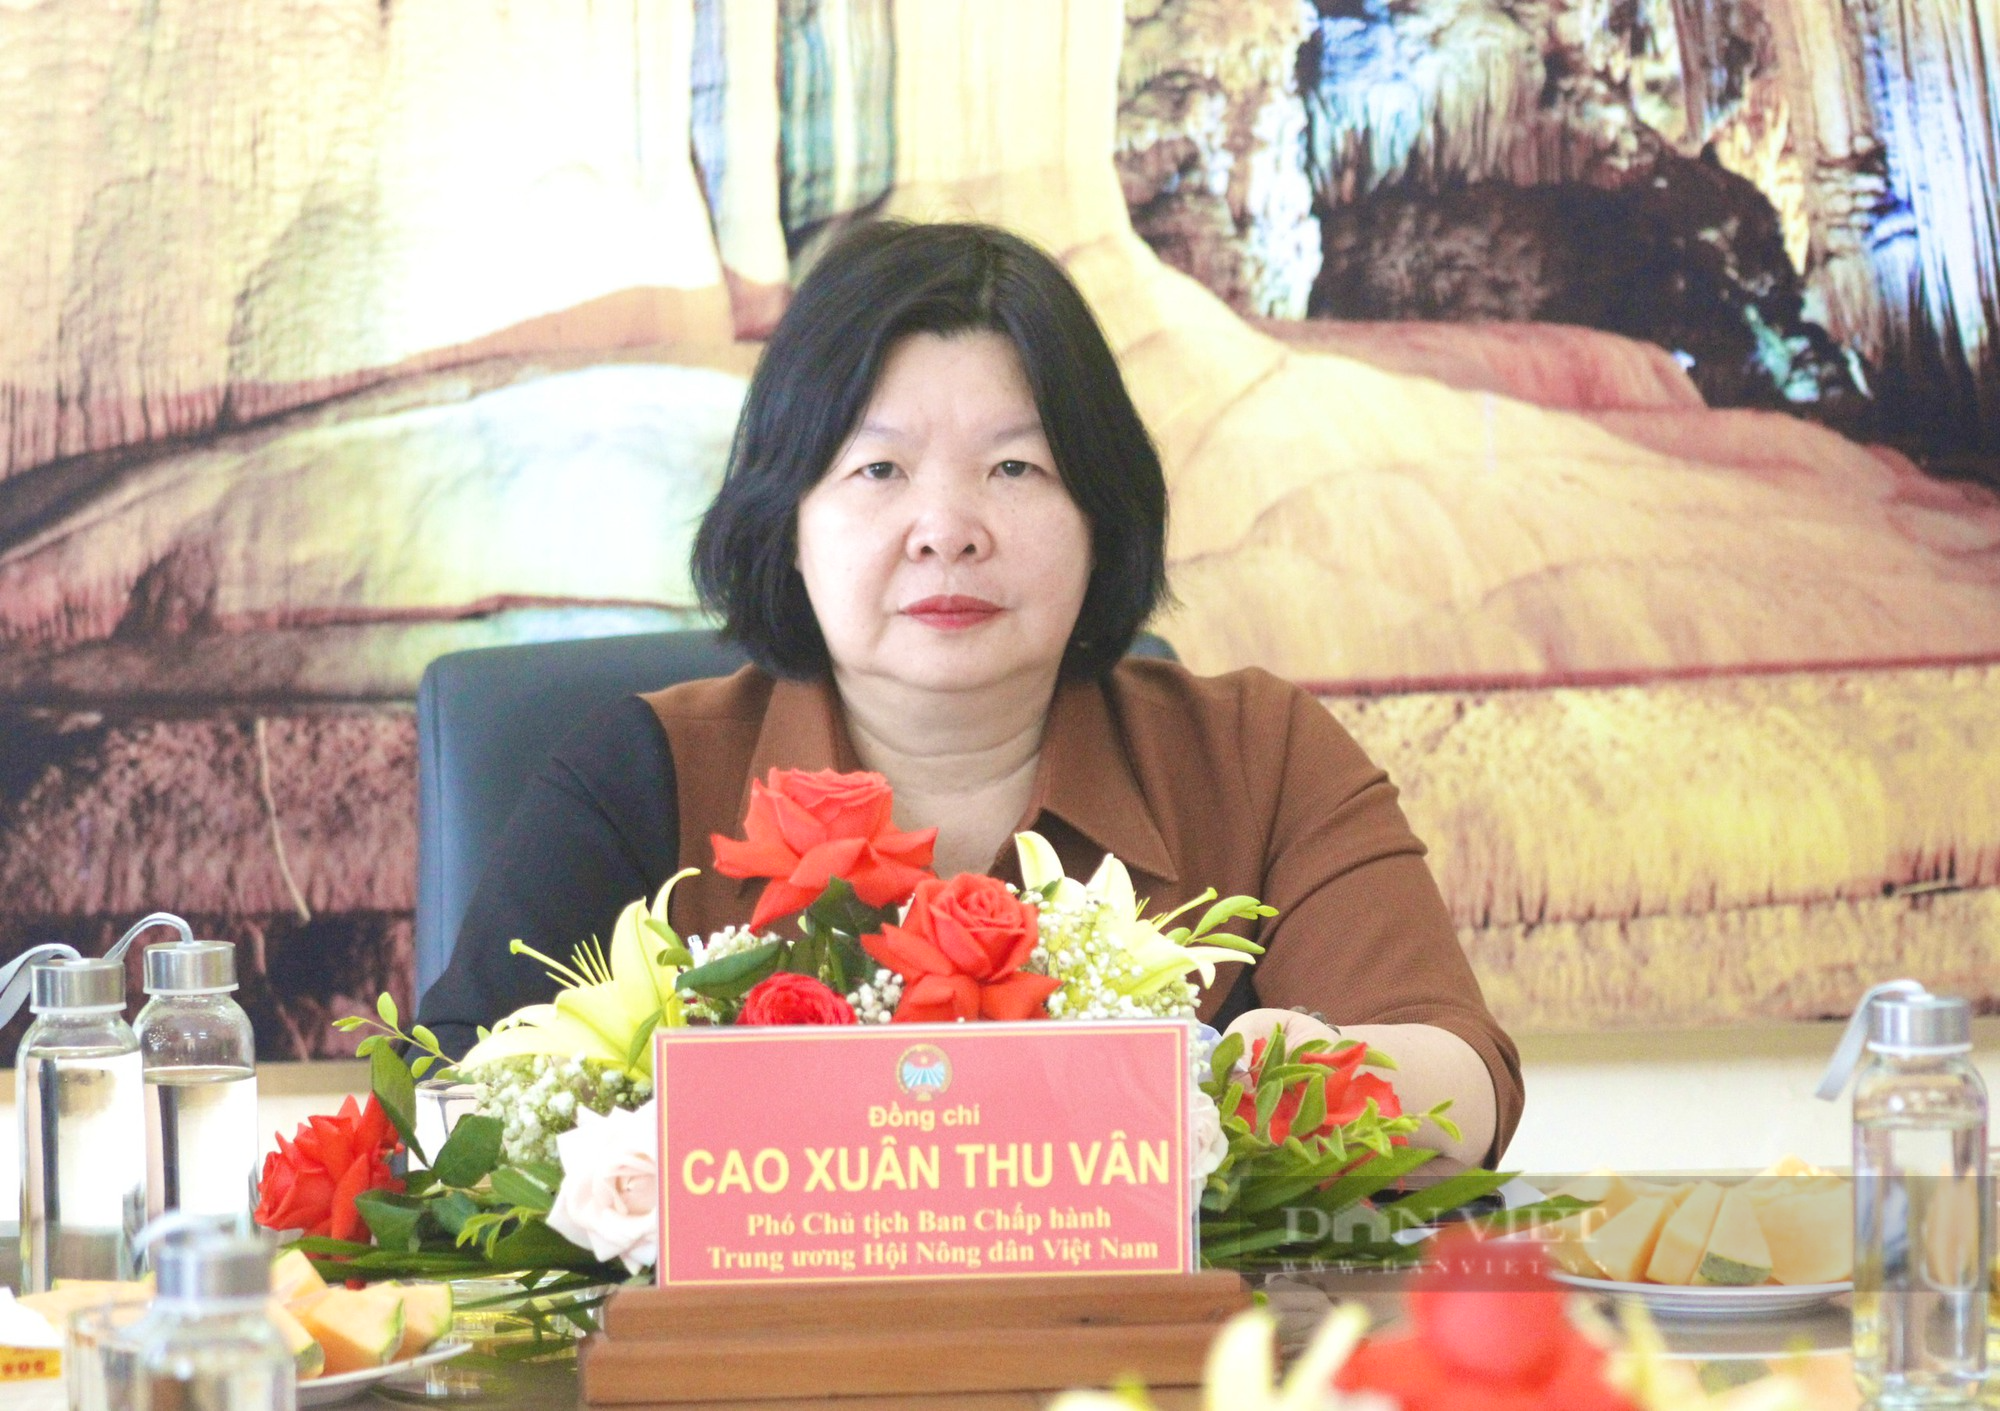 Phó Chủ tịch TƯ Hội NDVN Cao Xuân Thu Vân thăm, làm việc tại tỉnh Quảng Bình - Ảnh 2.